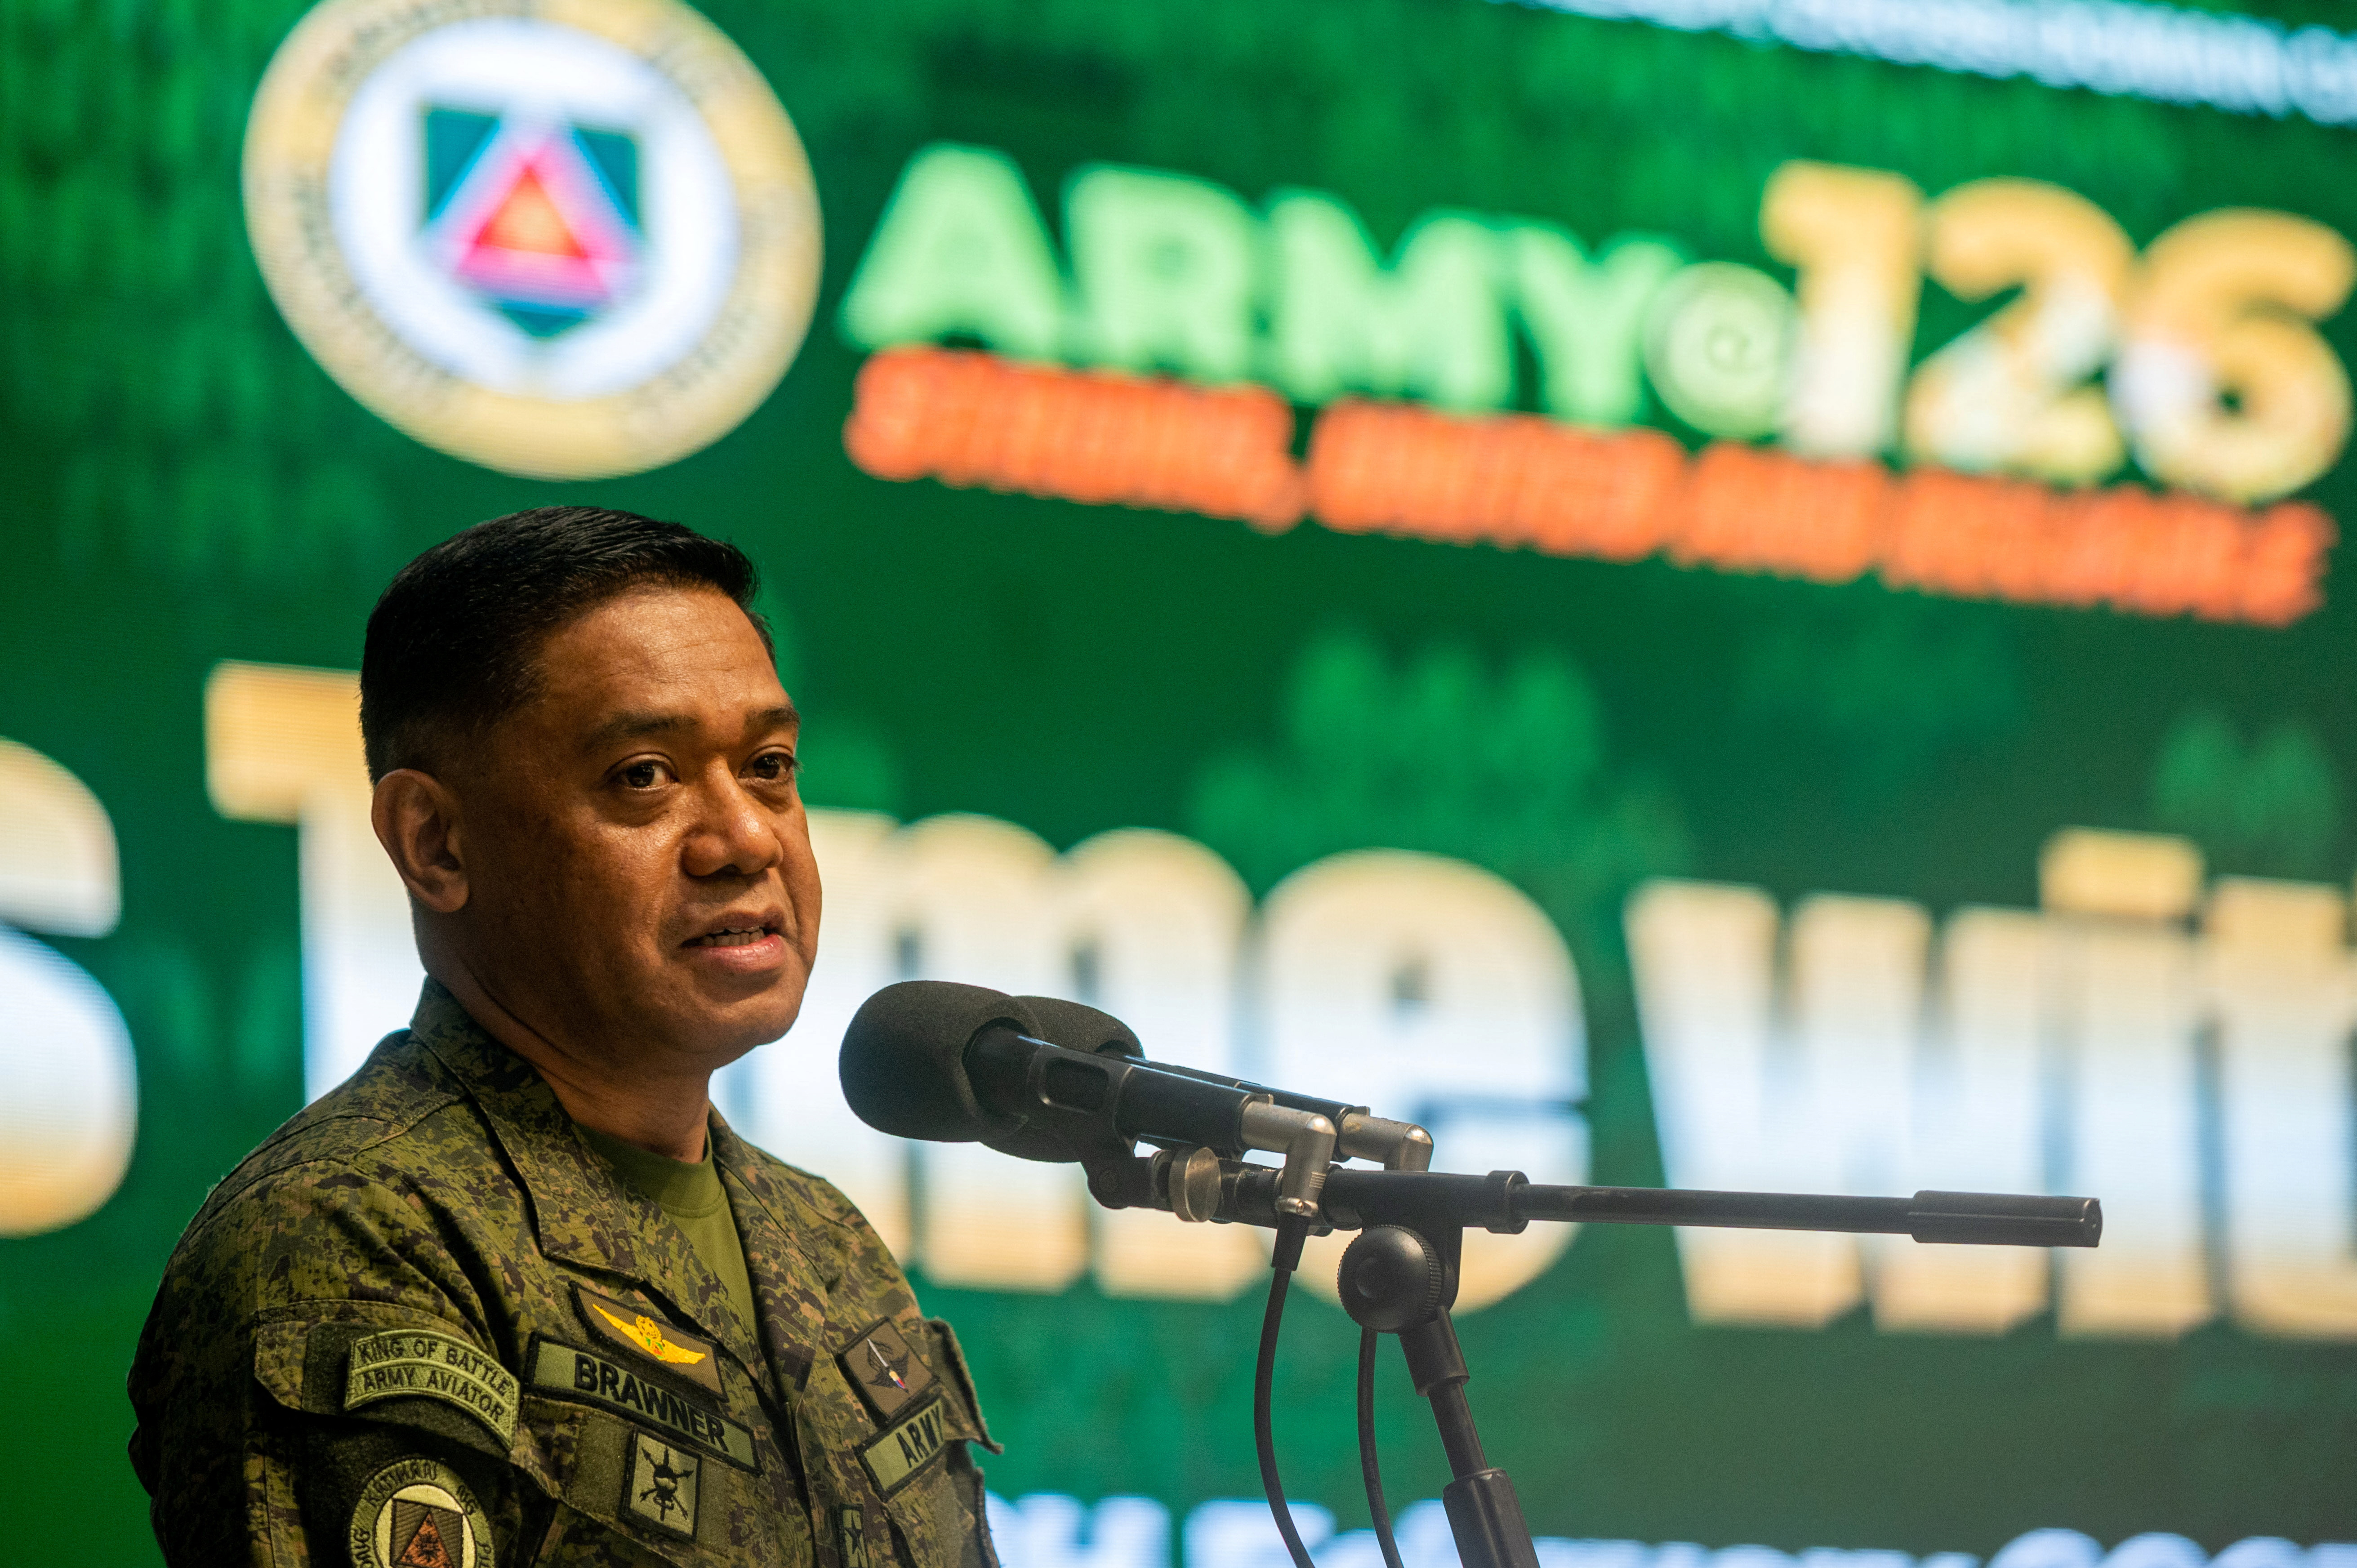 Philippine Army Chief Lt. Gen. Romeo Brawner